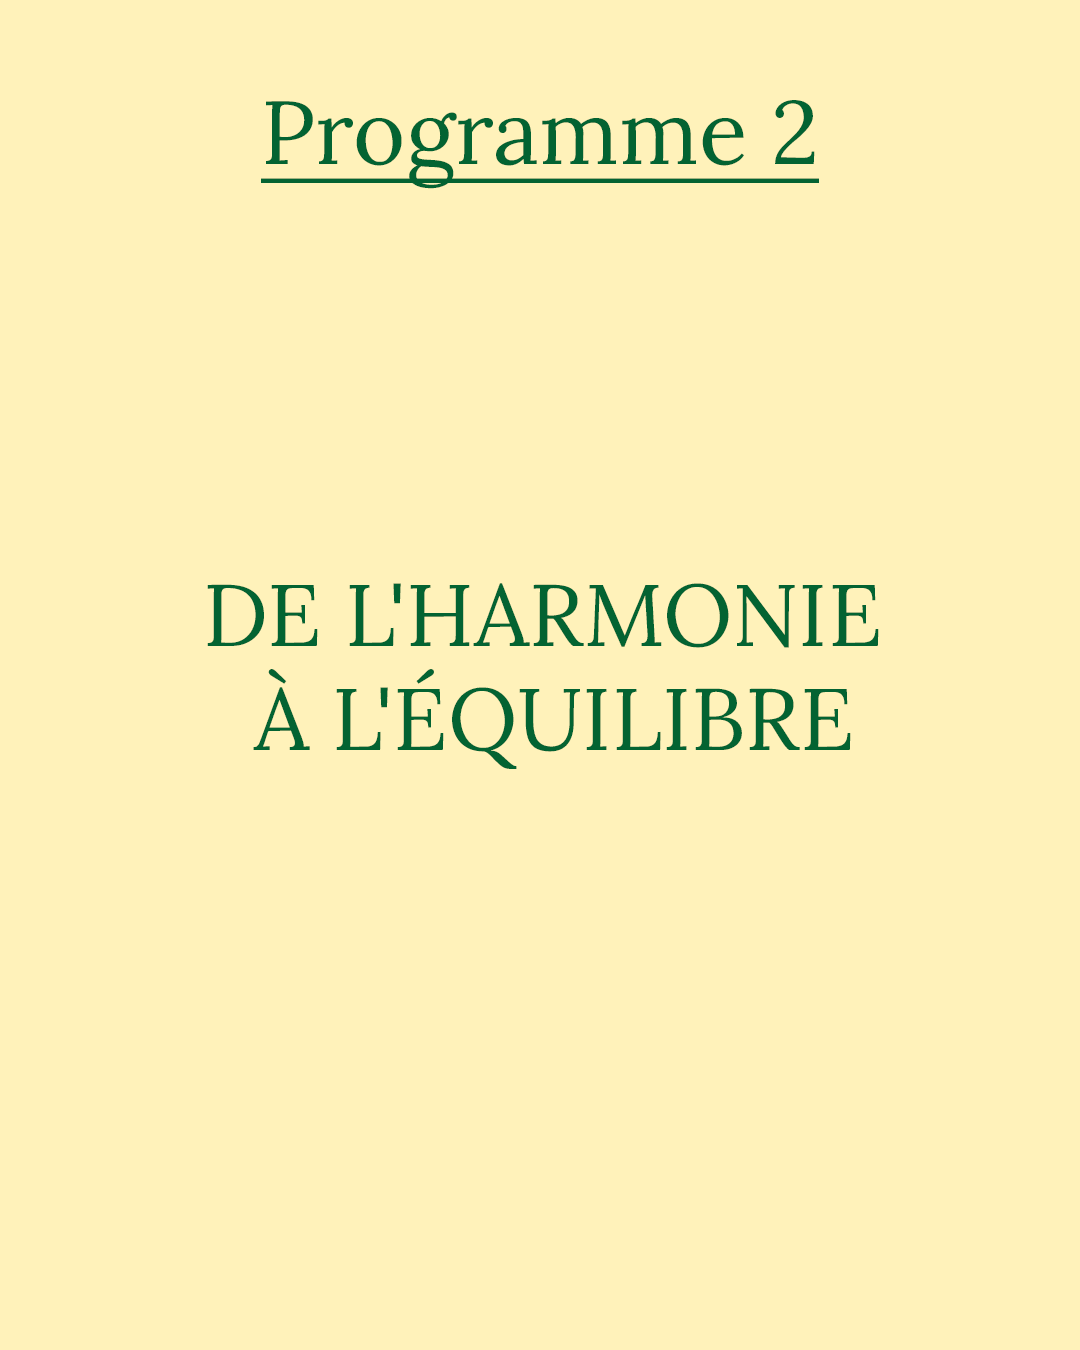 Programme 2 : de l’harmonie à l’équilibre